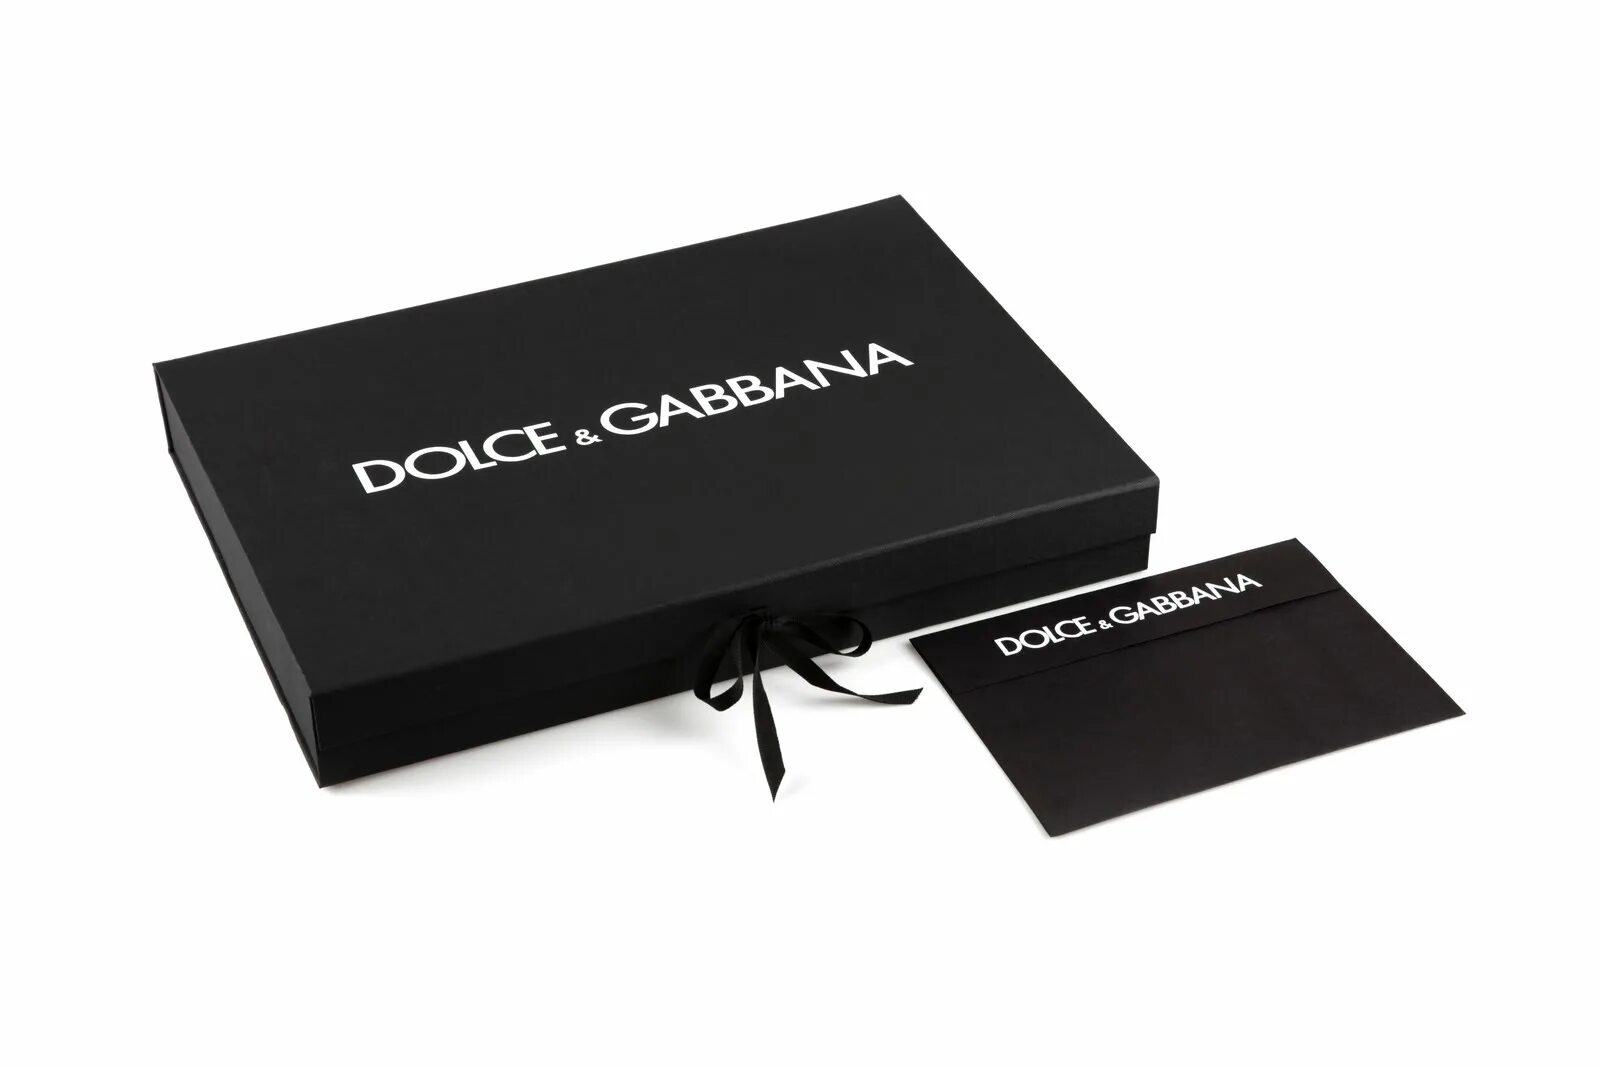 Упаковка дольче габбана. Дольче Габбана Дольче упаковка. Подарочный пакет Дольче Габбана. Пакет Dolce Gabbana оригинал. Дипломат Дольче Габбана.